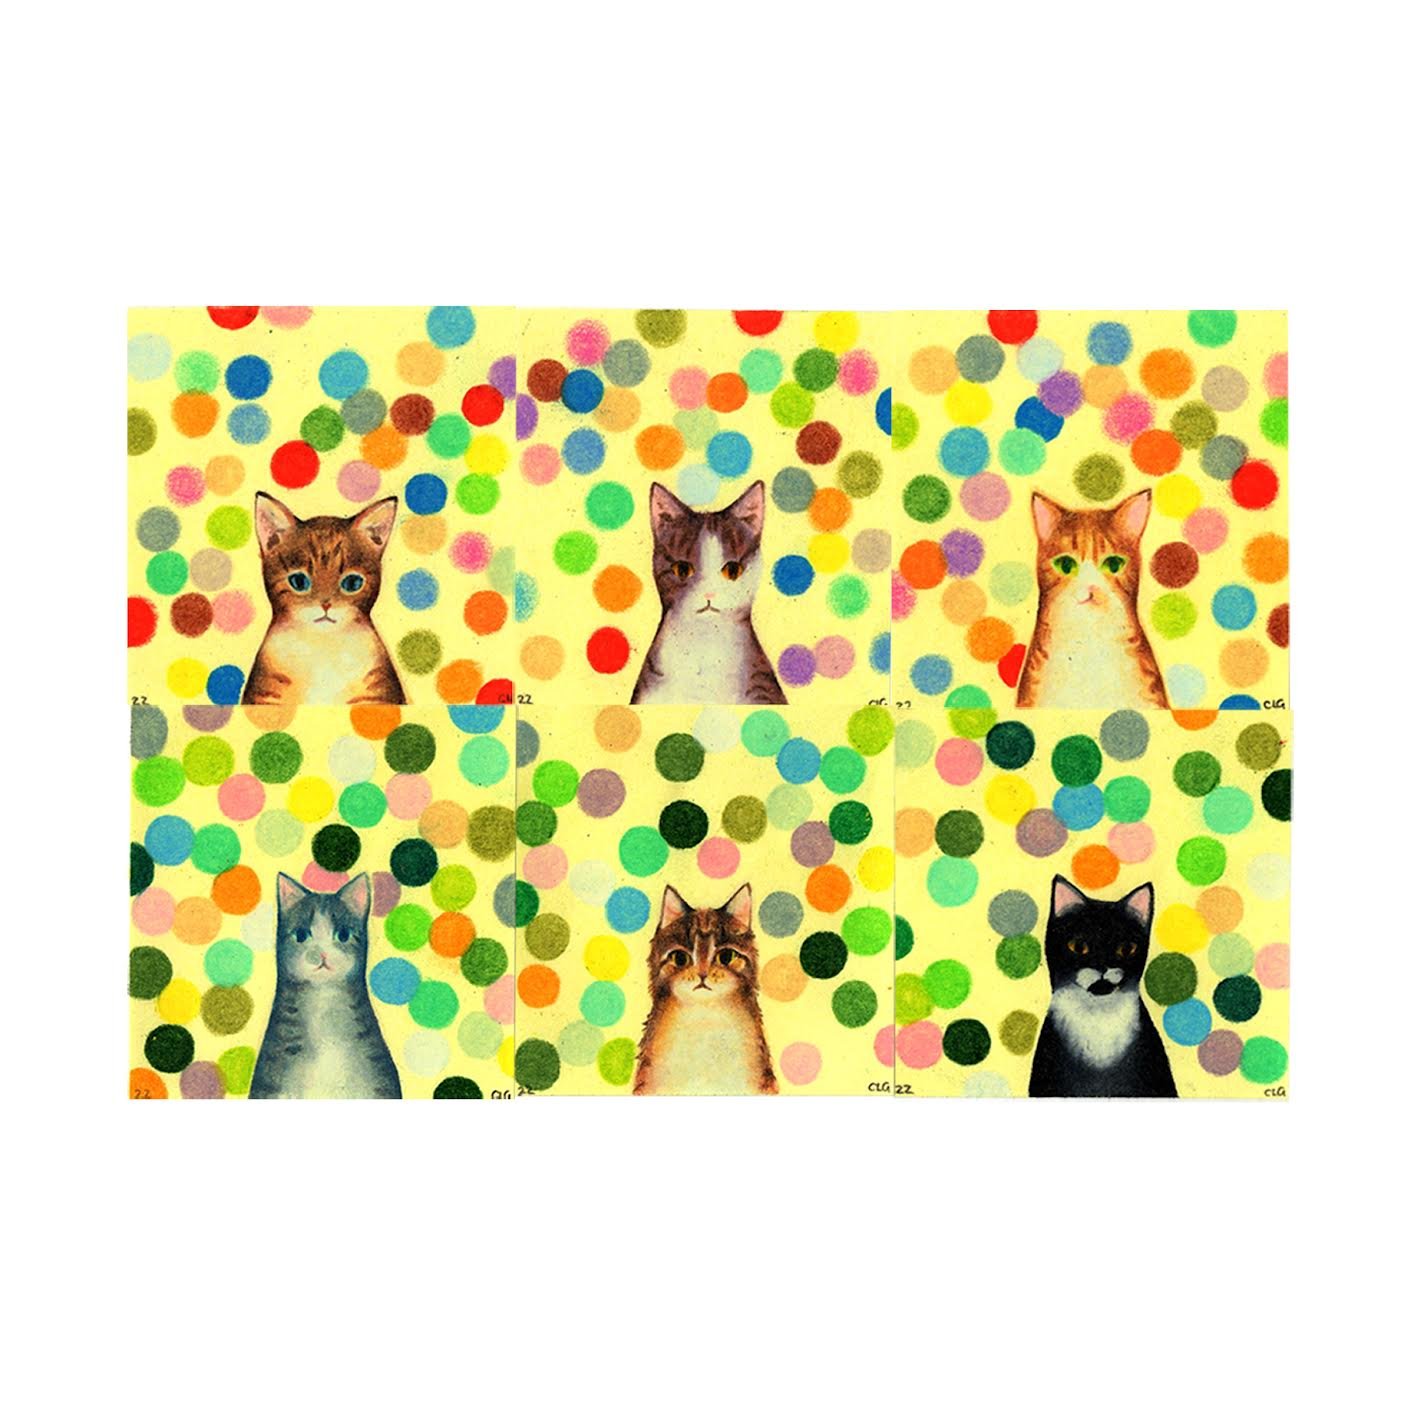   “Cat Portraits” Set 2   Colored Pencil  Post-It Notes  3 x 3” 